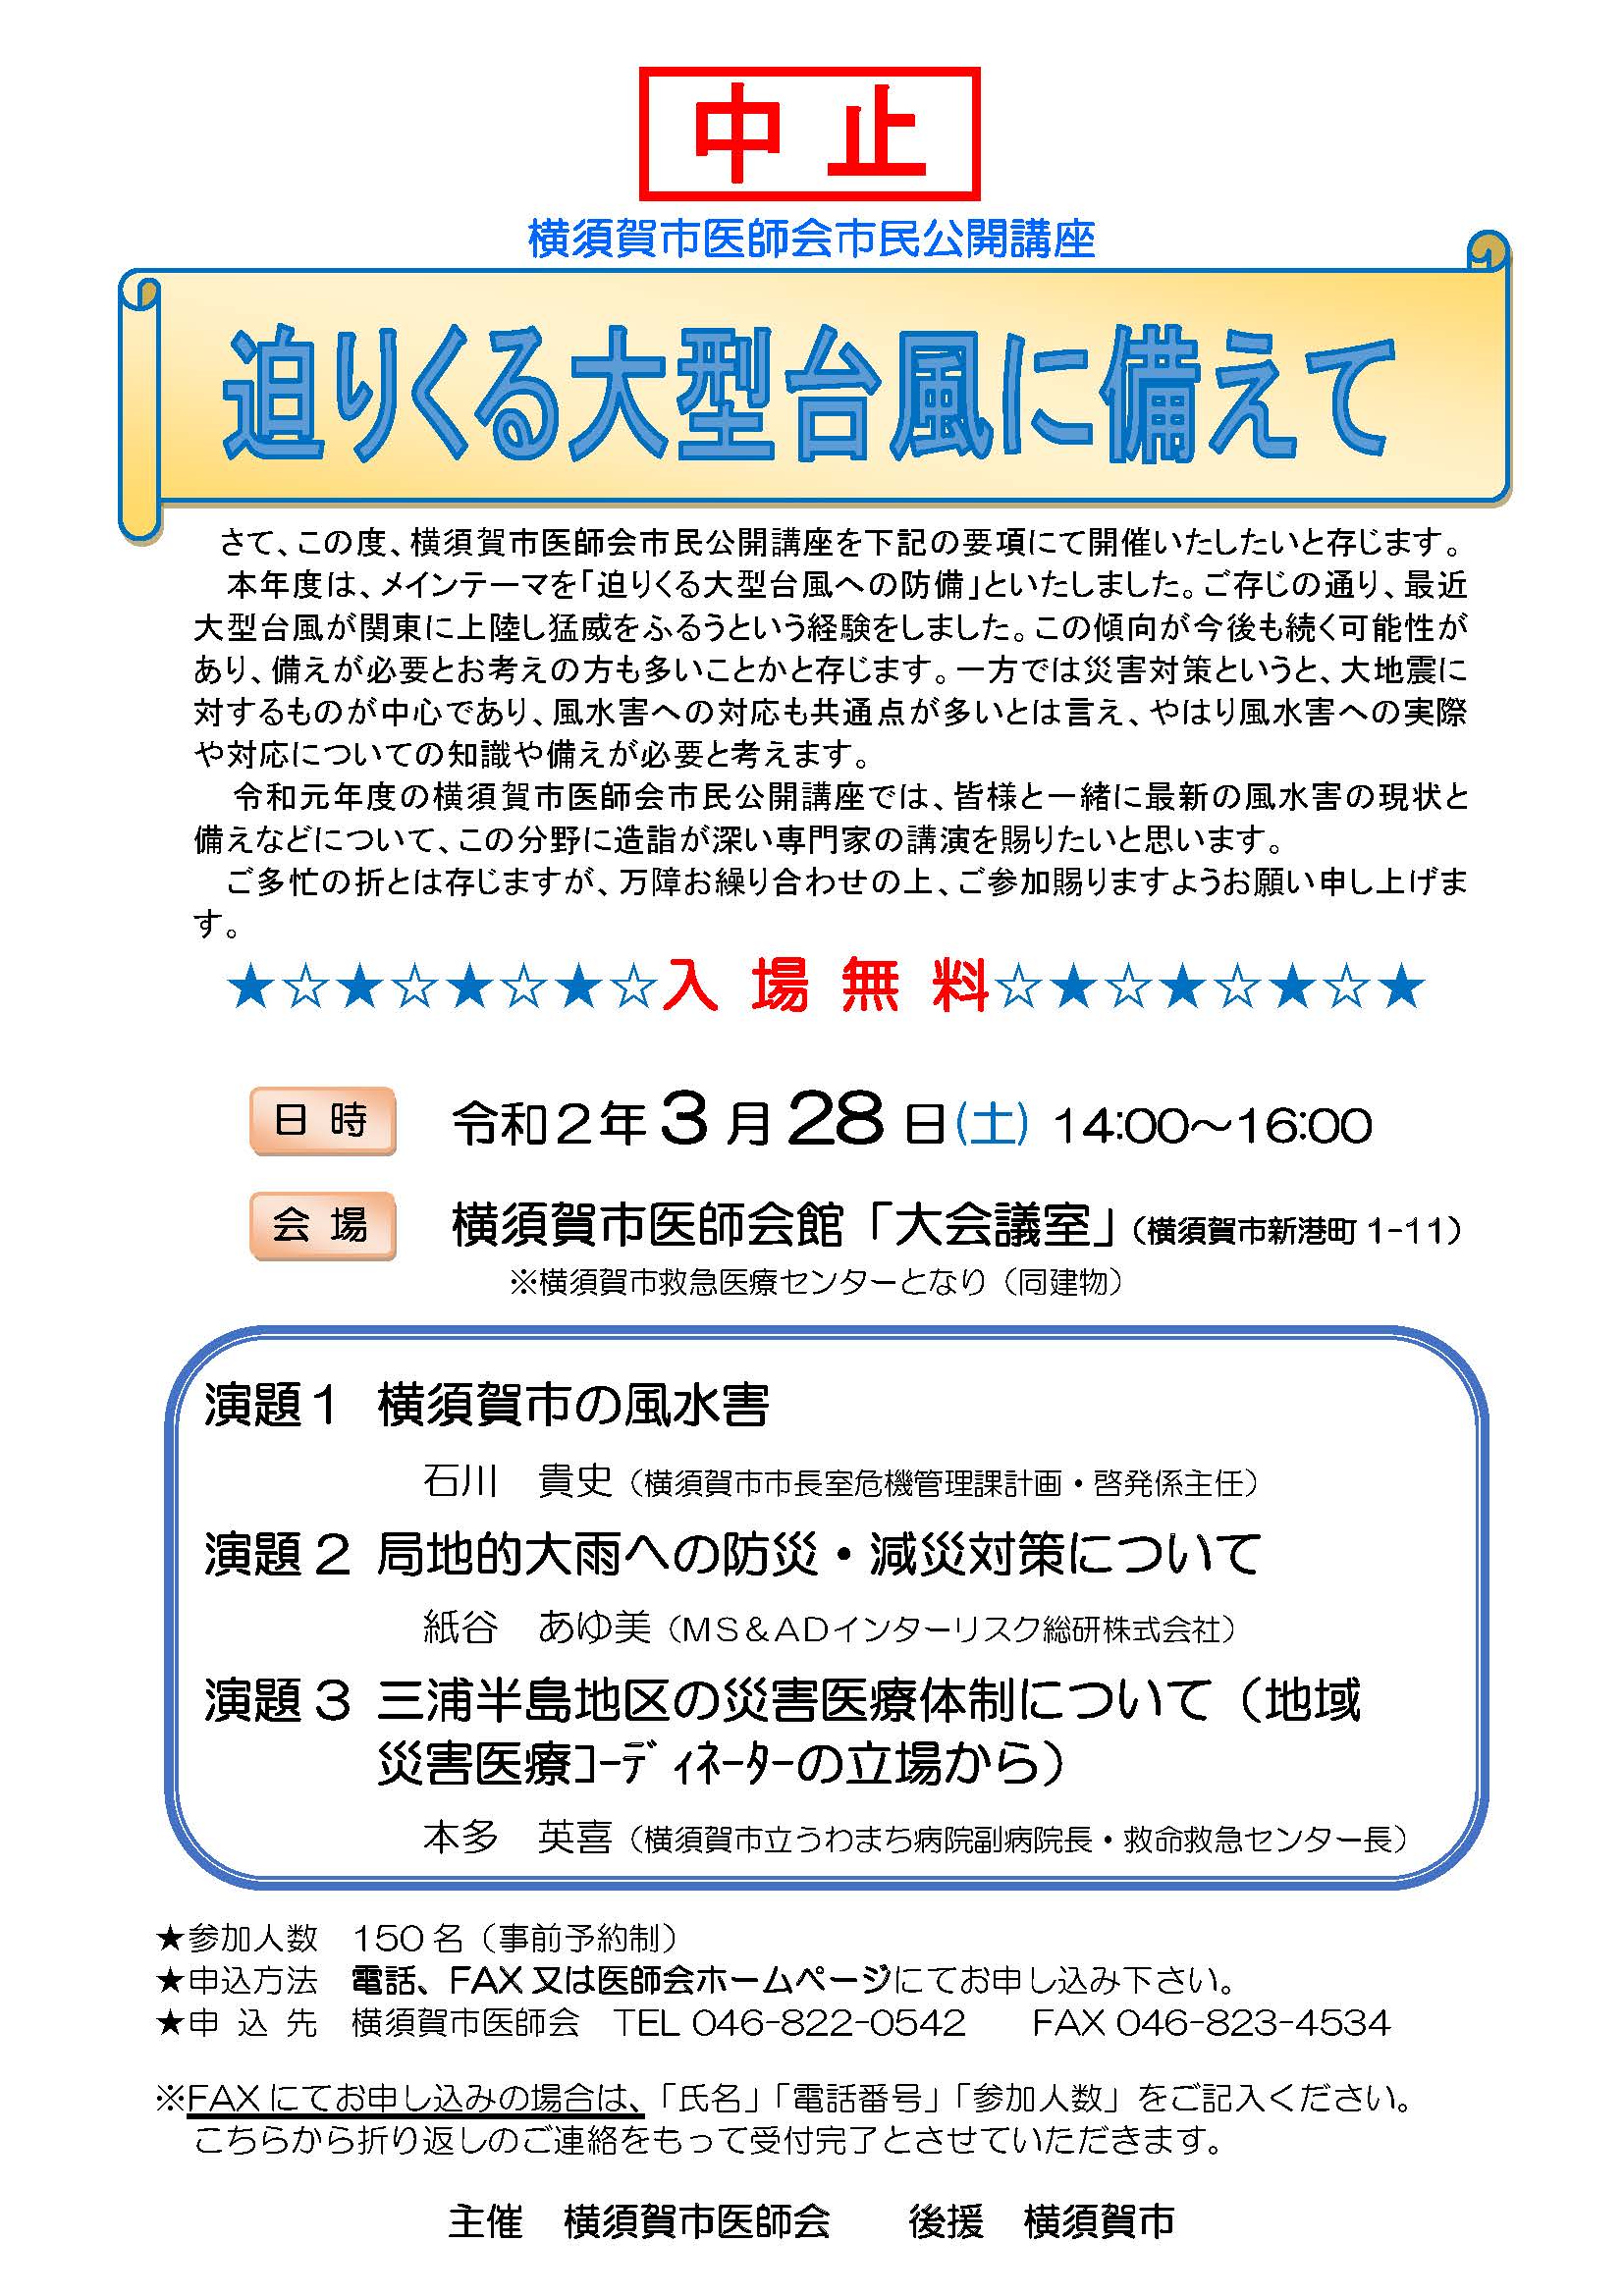 ウイルス 横須賀 コロナ 横須賀市 新型コロナウイルス感染症ワクチン接種